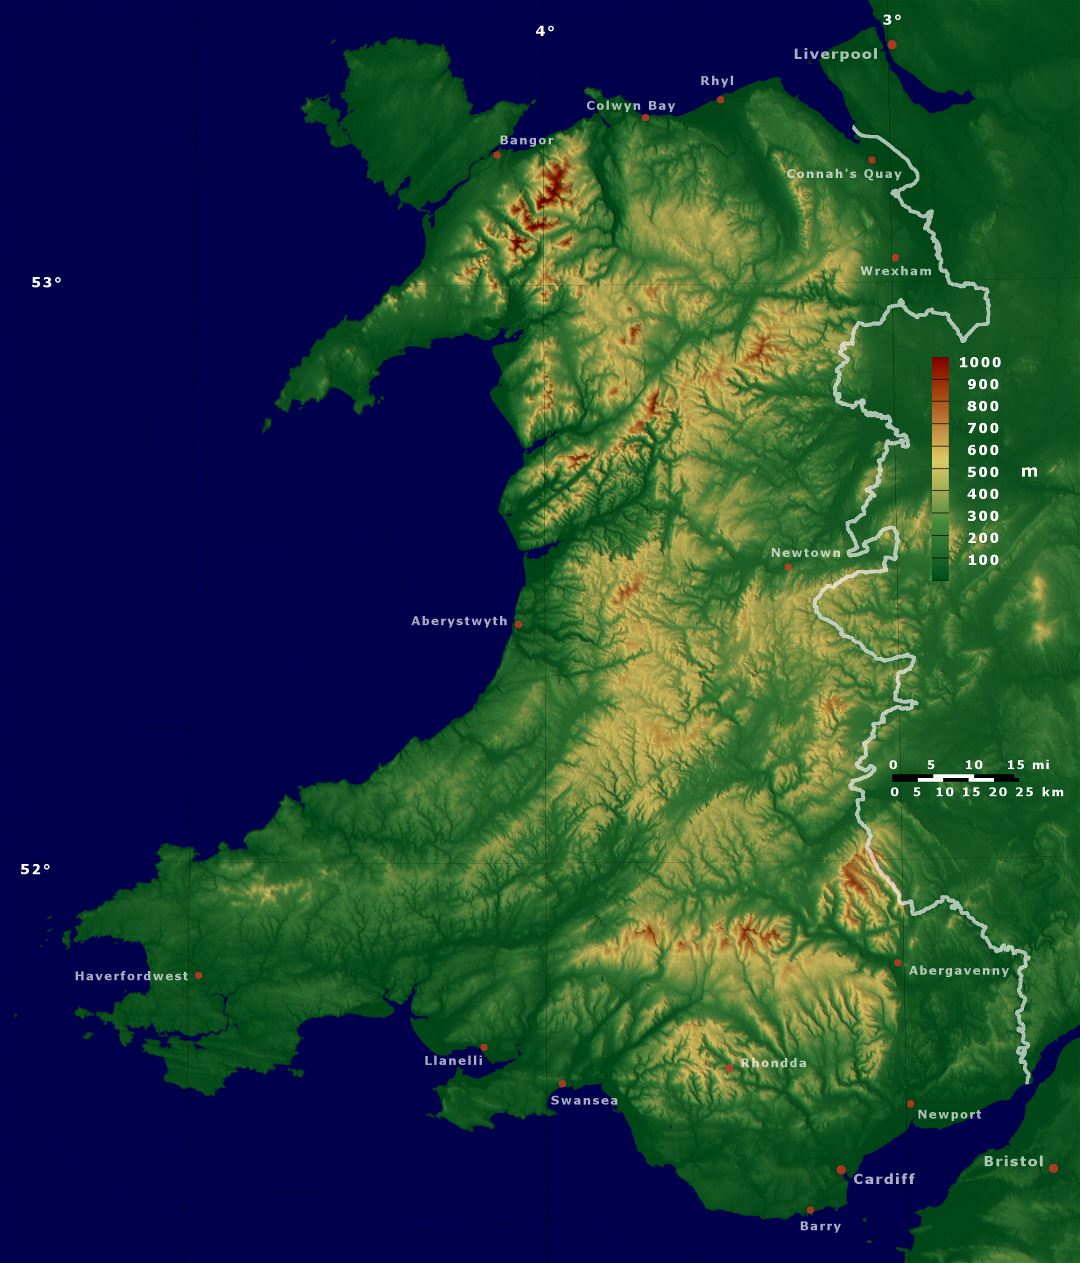 Grande detallado mapa físico de Gales